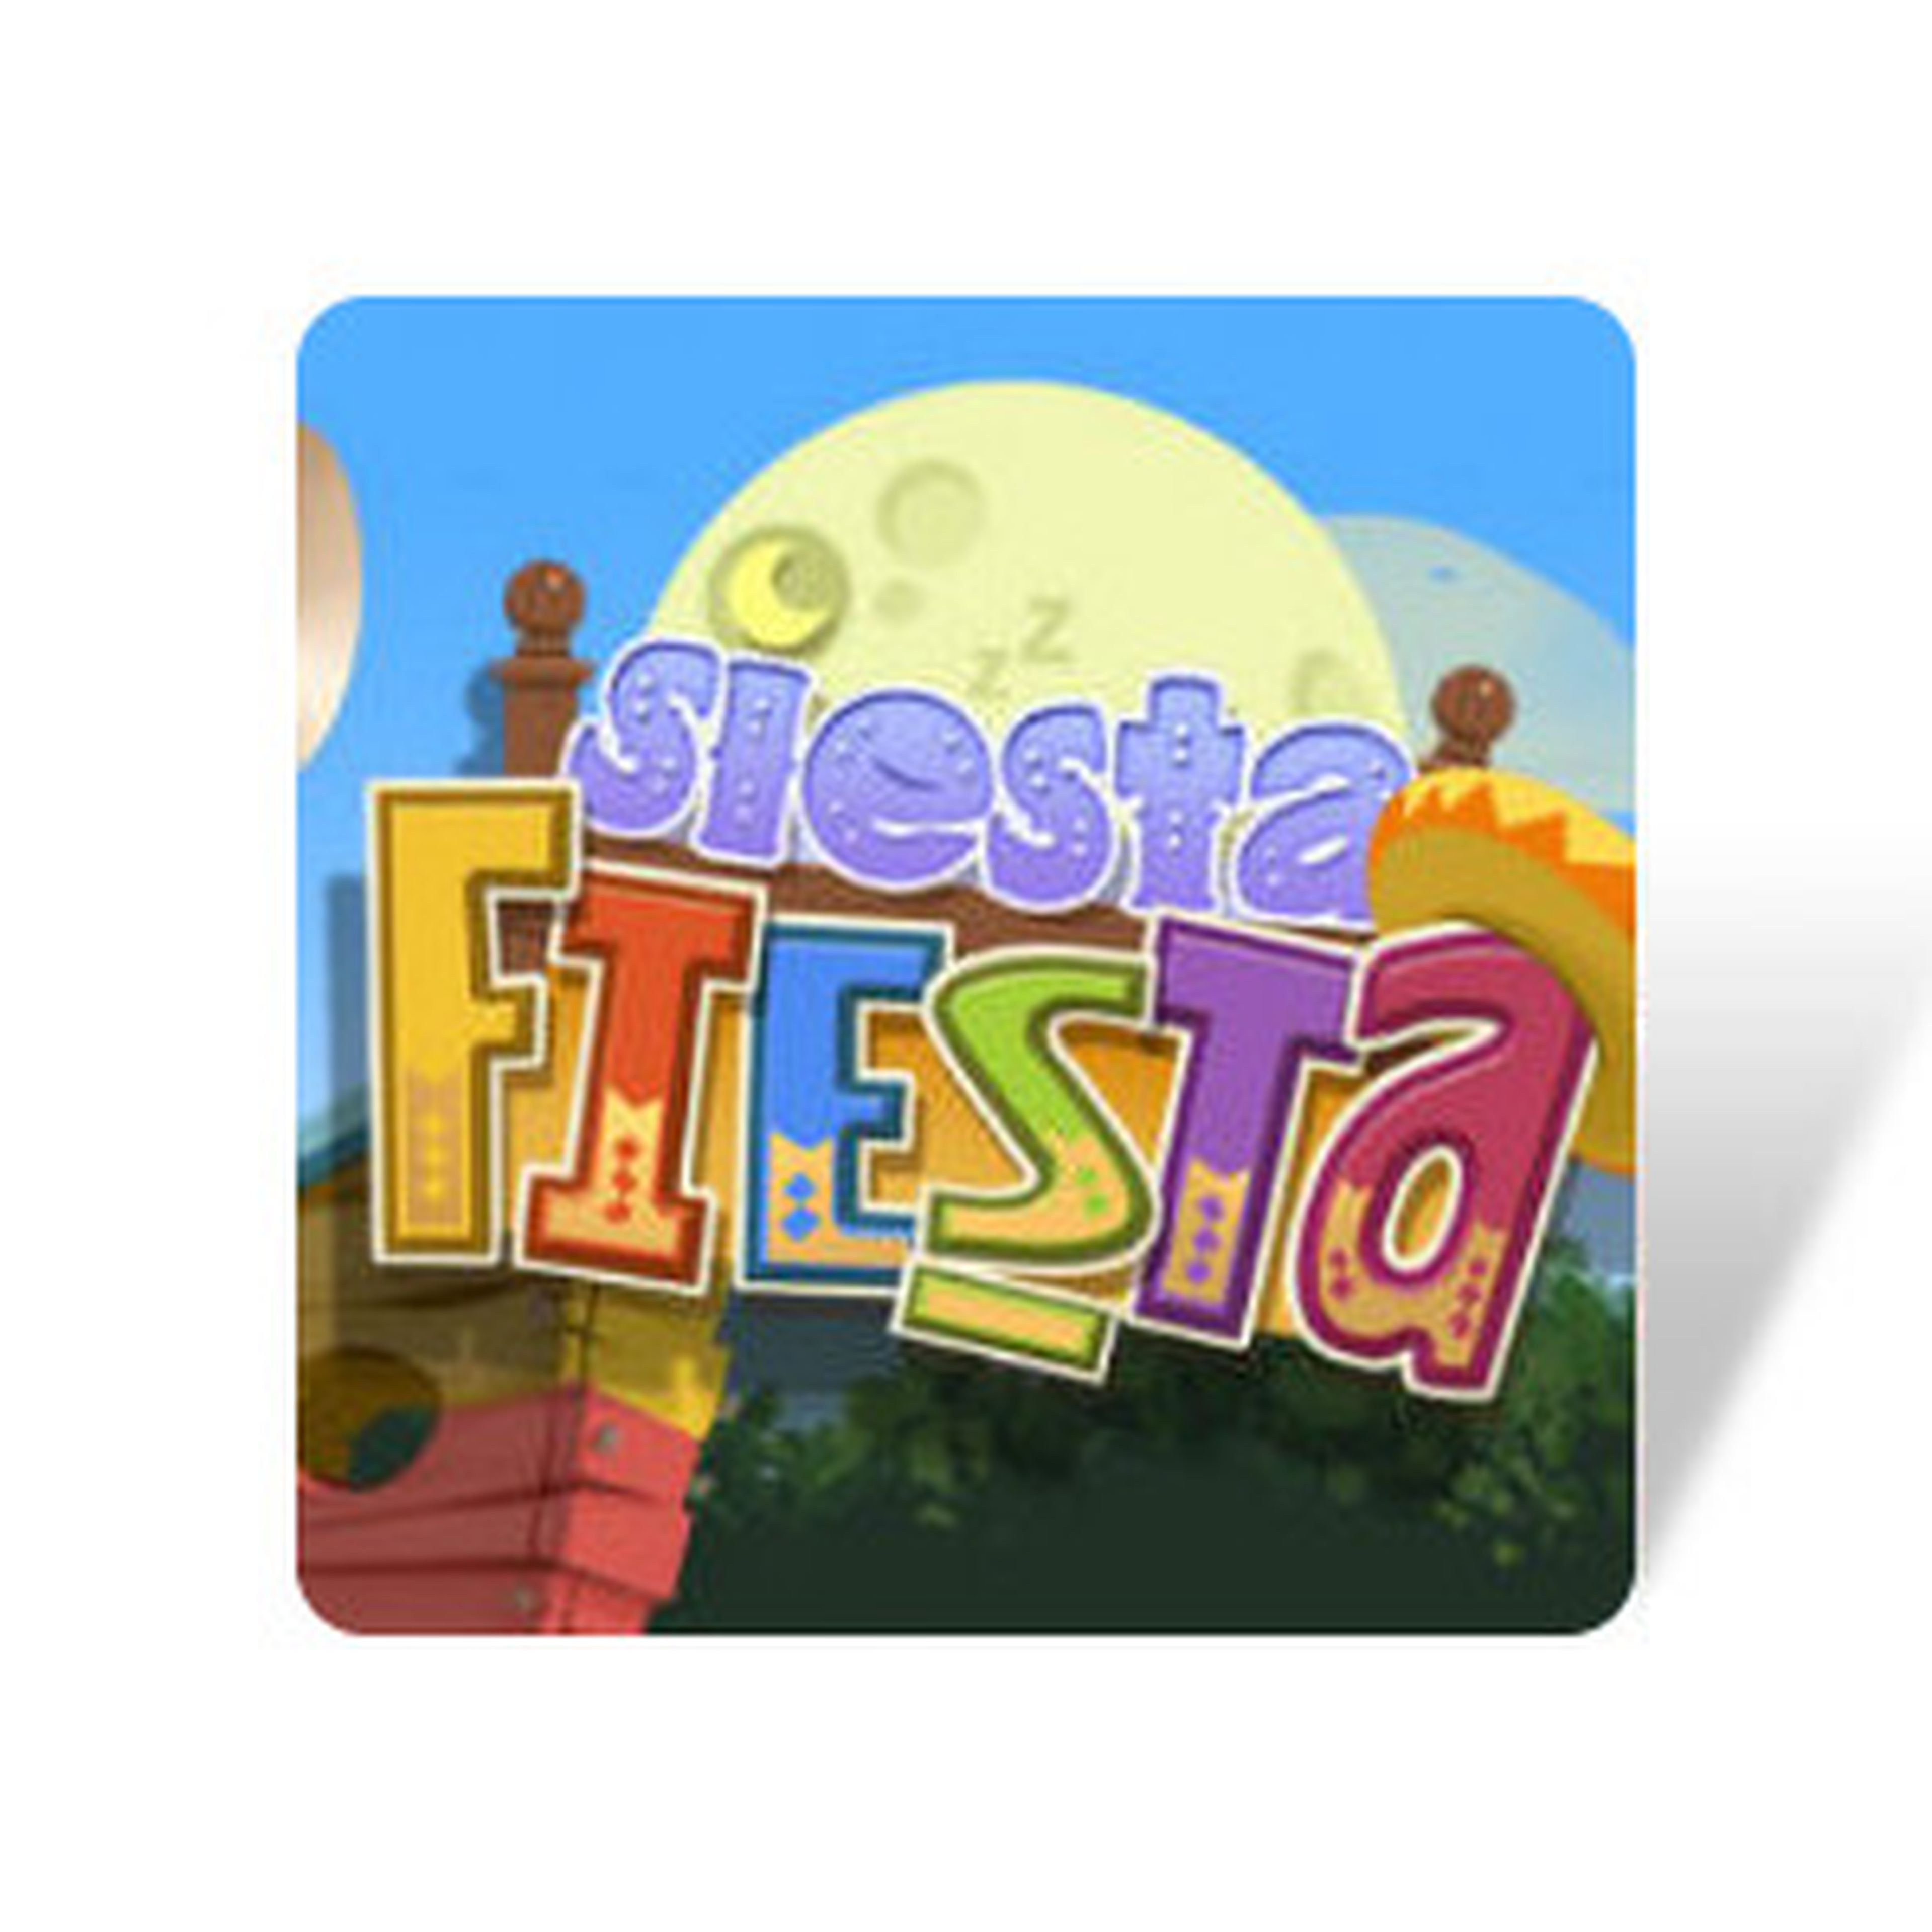 Siesta Fiesta para 3DS